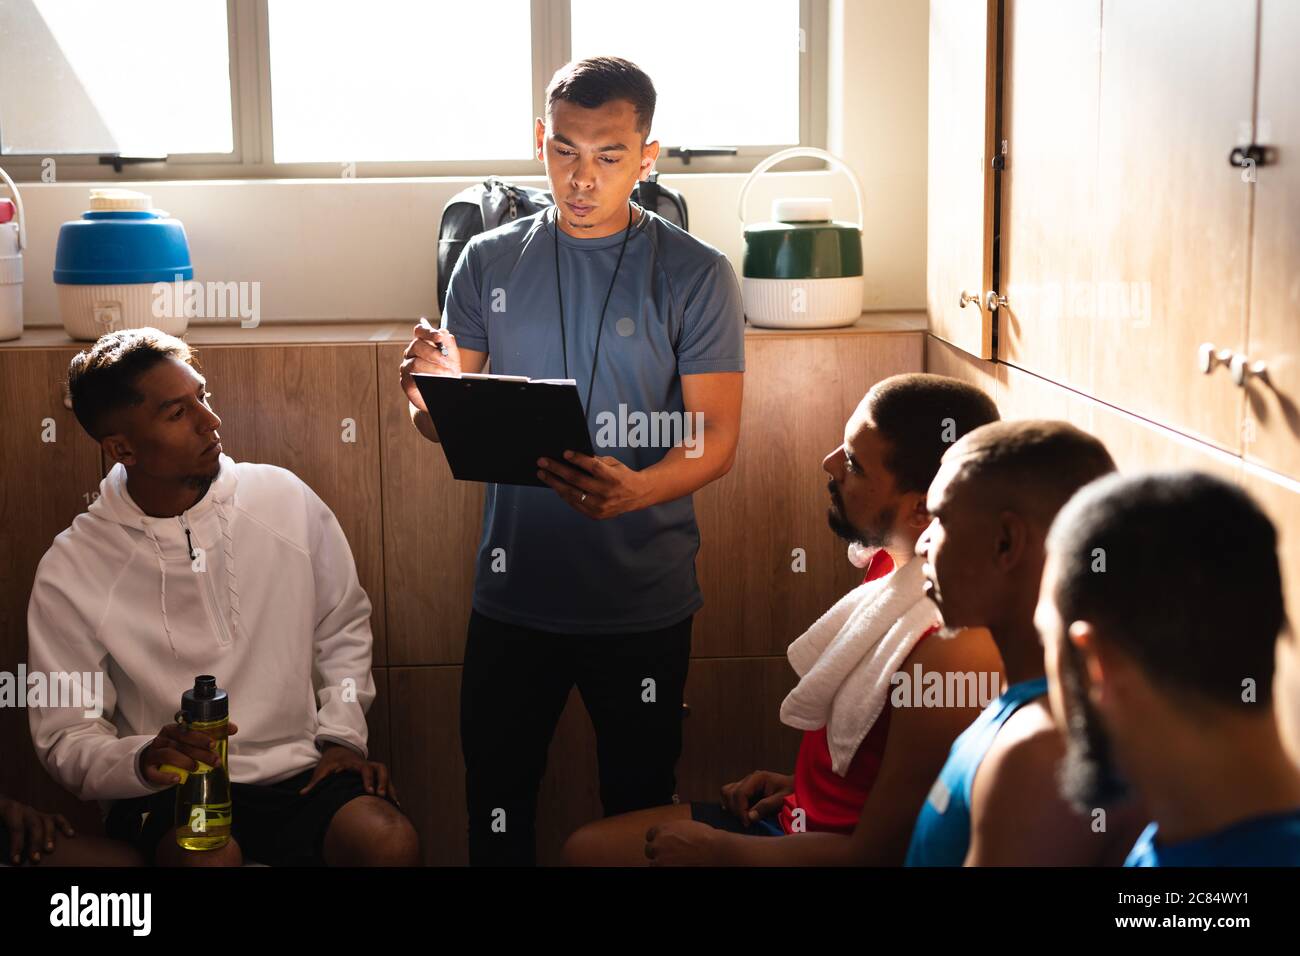 Multiethnische Gruppe von Fußballspielern in Sportkleidung sitzen in Umkleideraum während einer Pause im Spiel, hören ihren Trainer instruiert ho Stockfoto